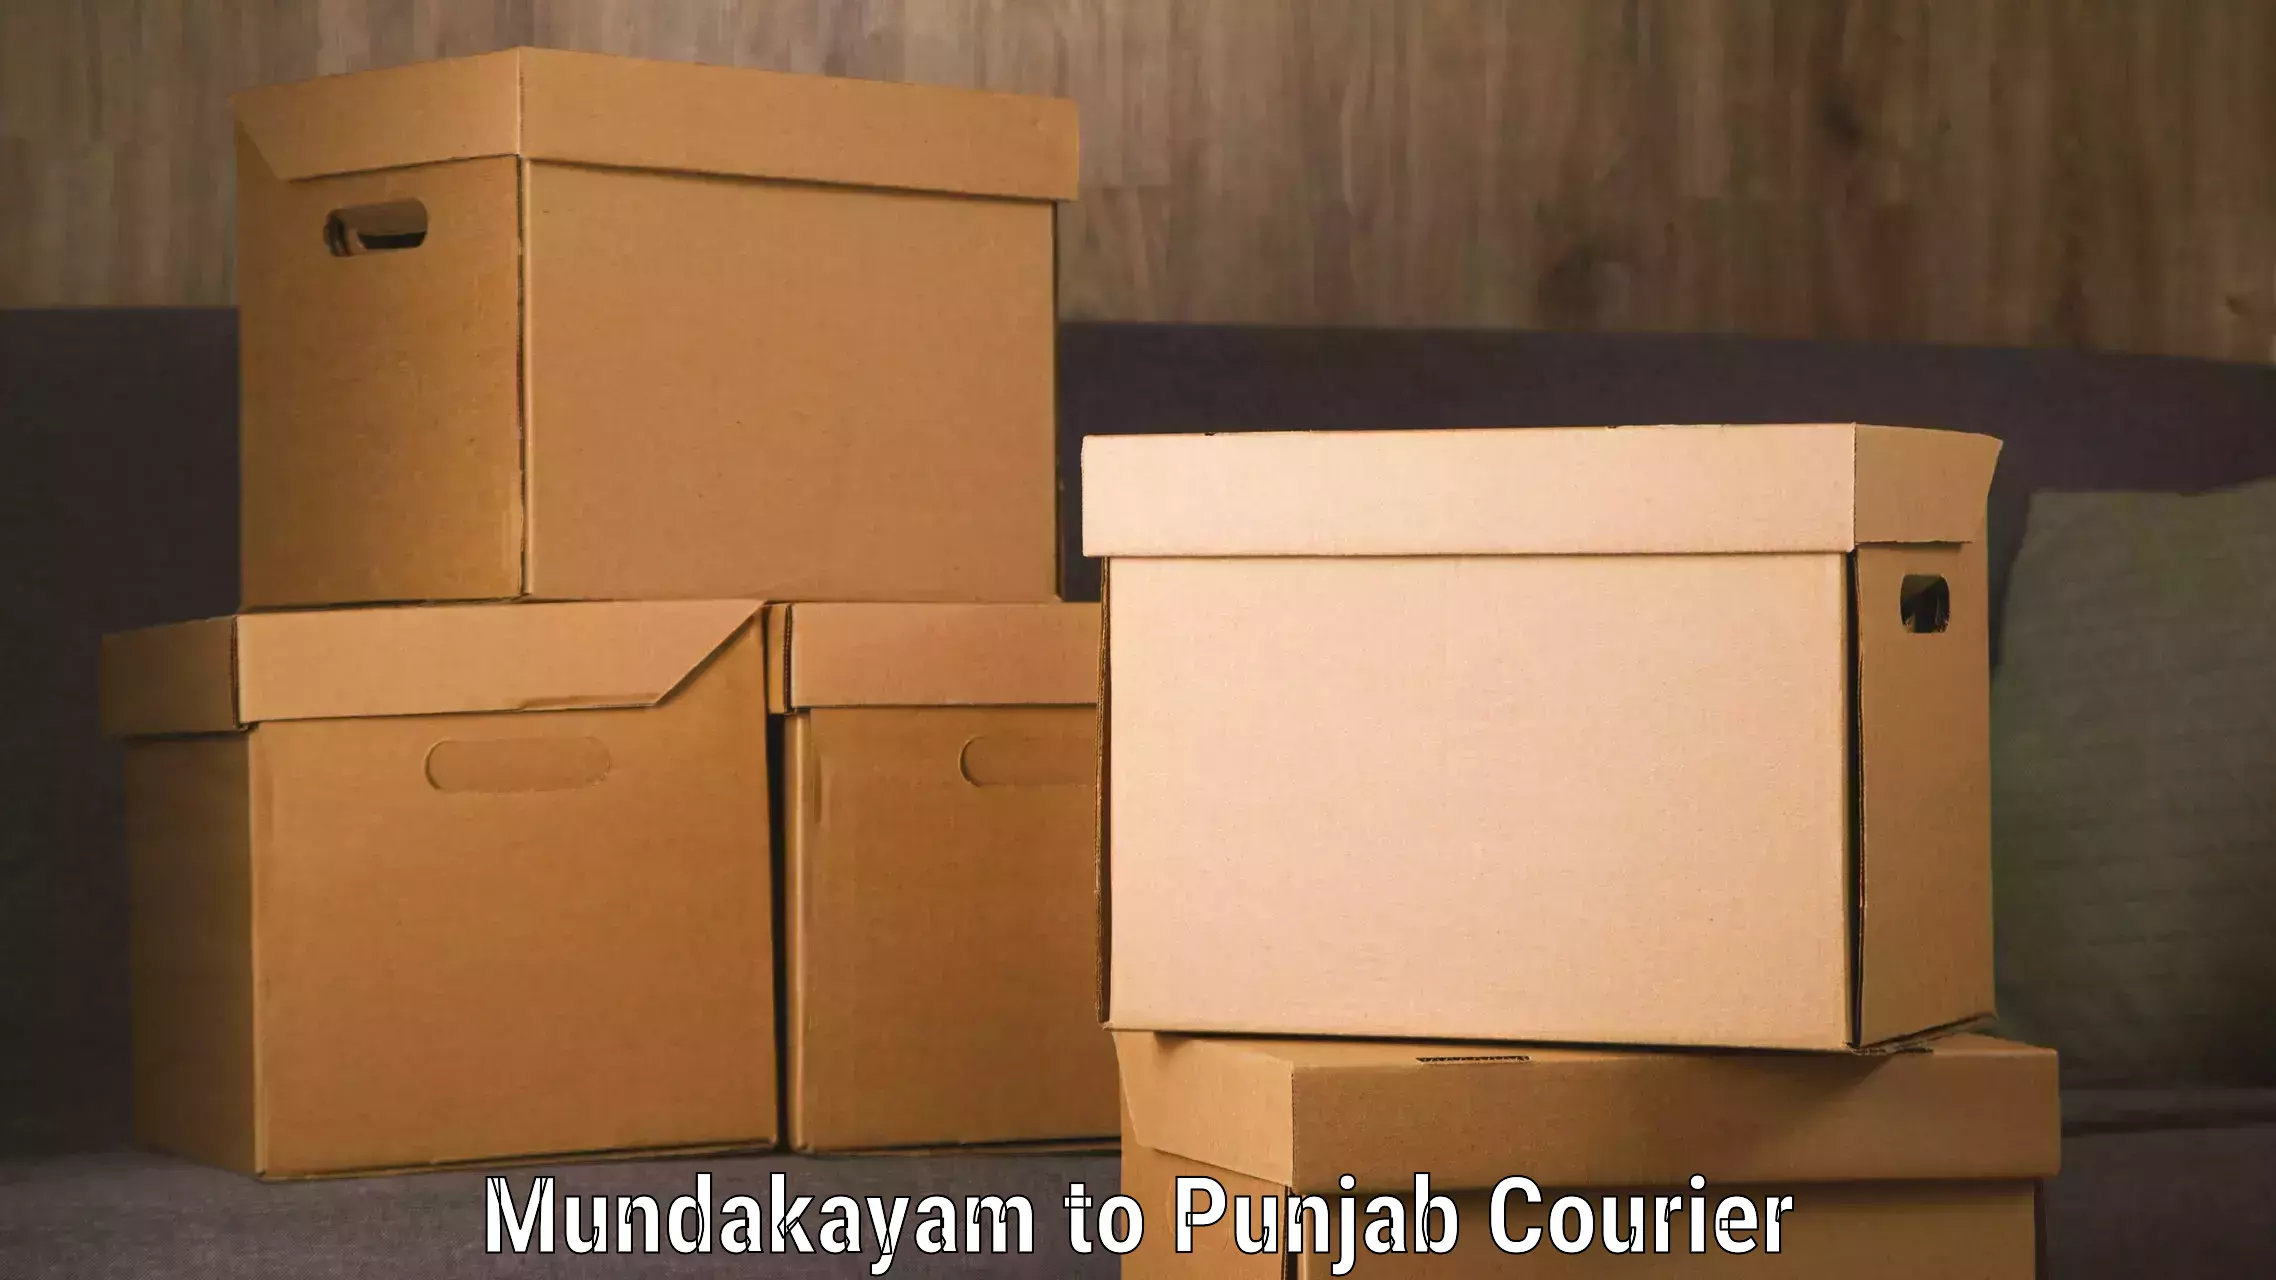 Express package transport in Mundakayam to Punjab